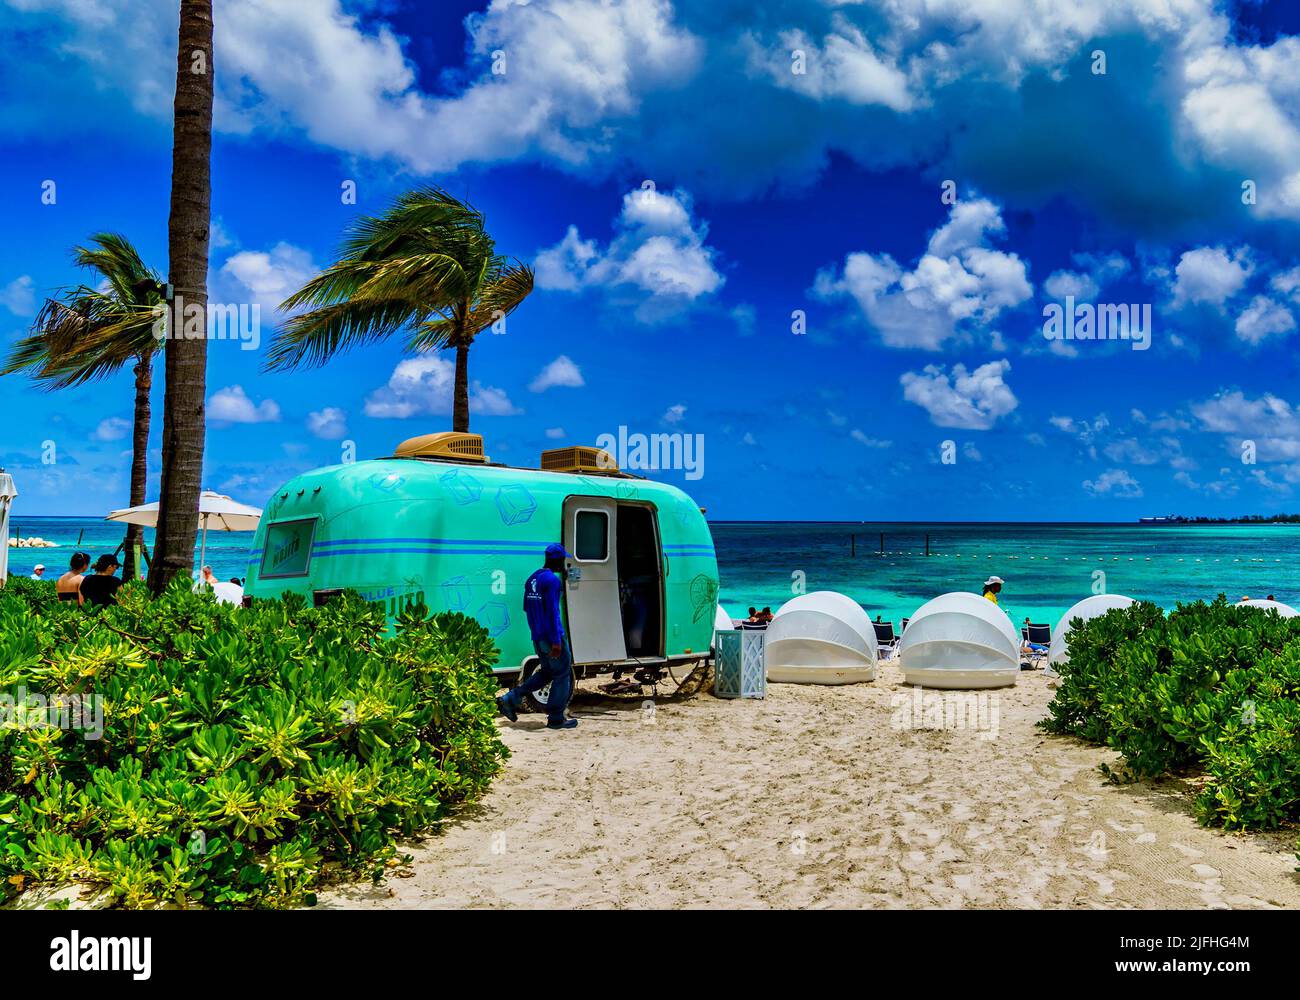 Camión de venta de alimentos en una playa tropical Foto de stock